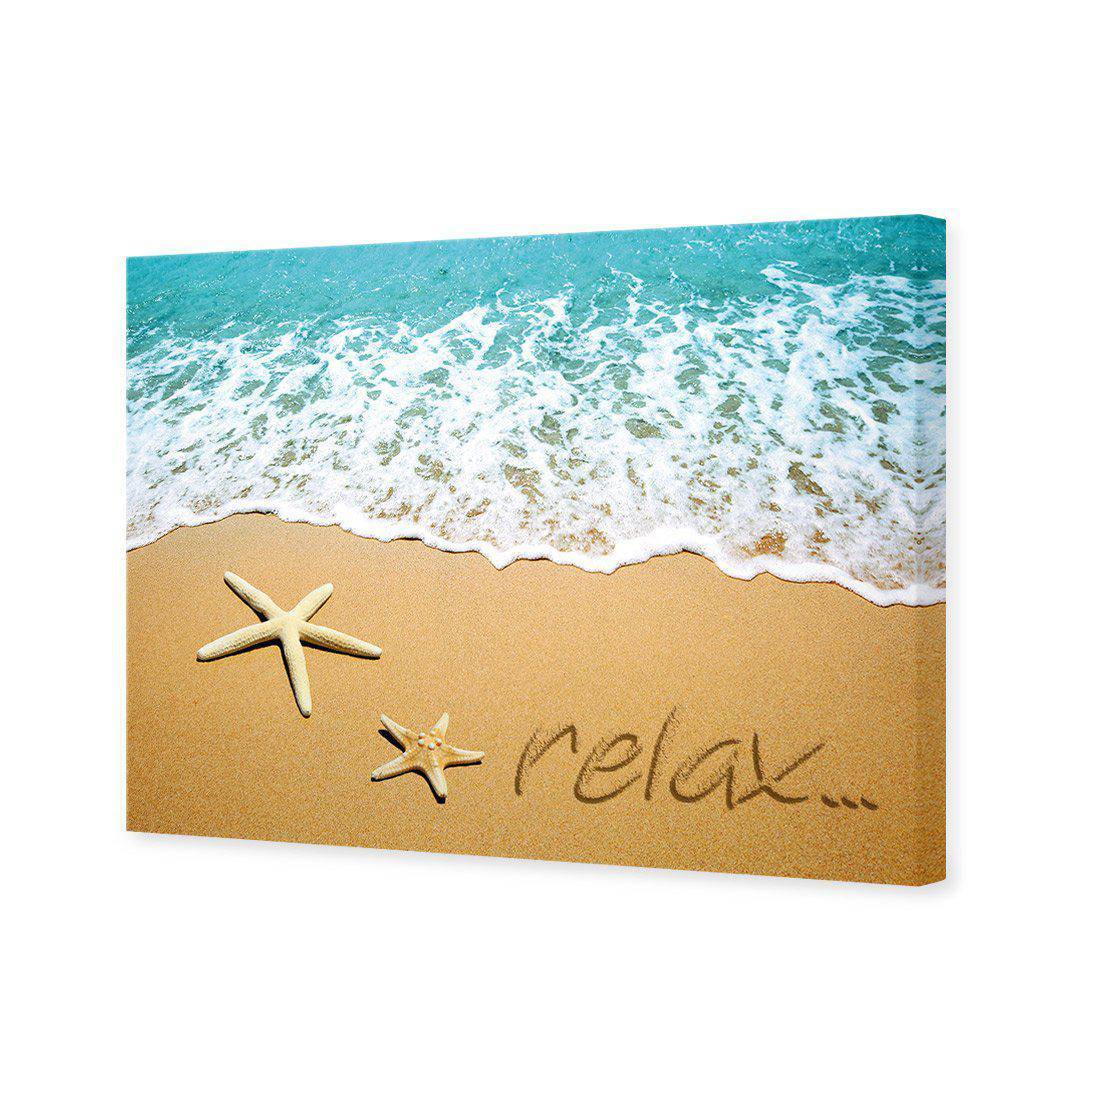 Relax Inspire Canvas Art-Canvas-Wall Art Designs-45x30cm-Canvas - No Frame-Wall Art Designs